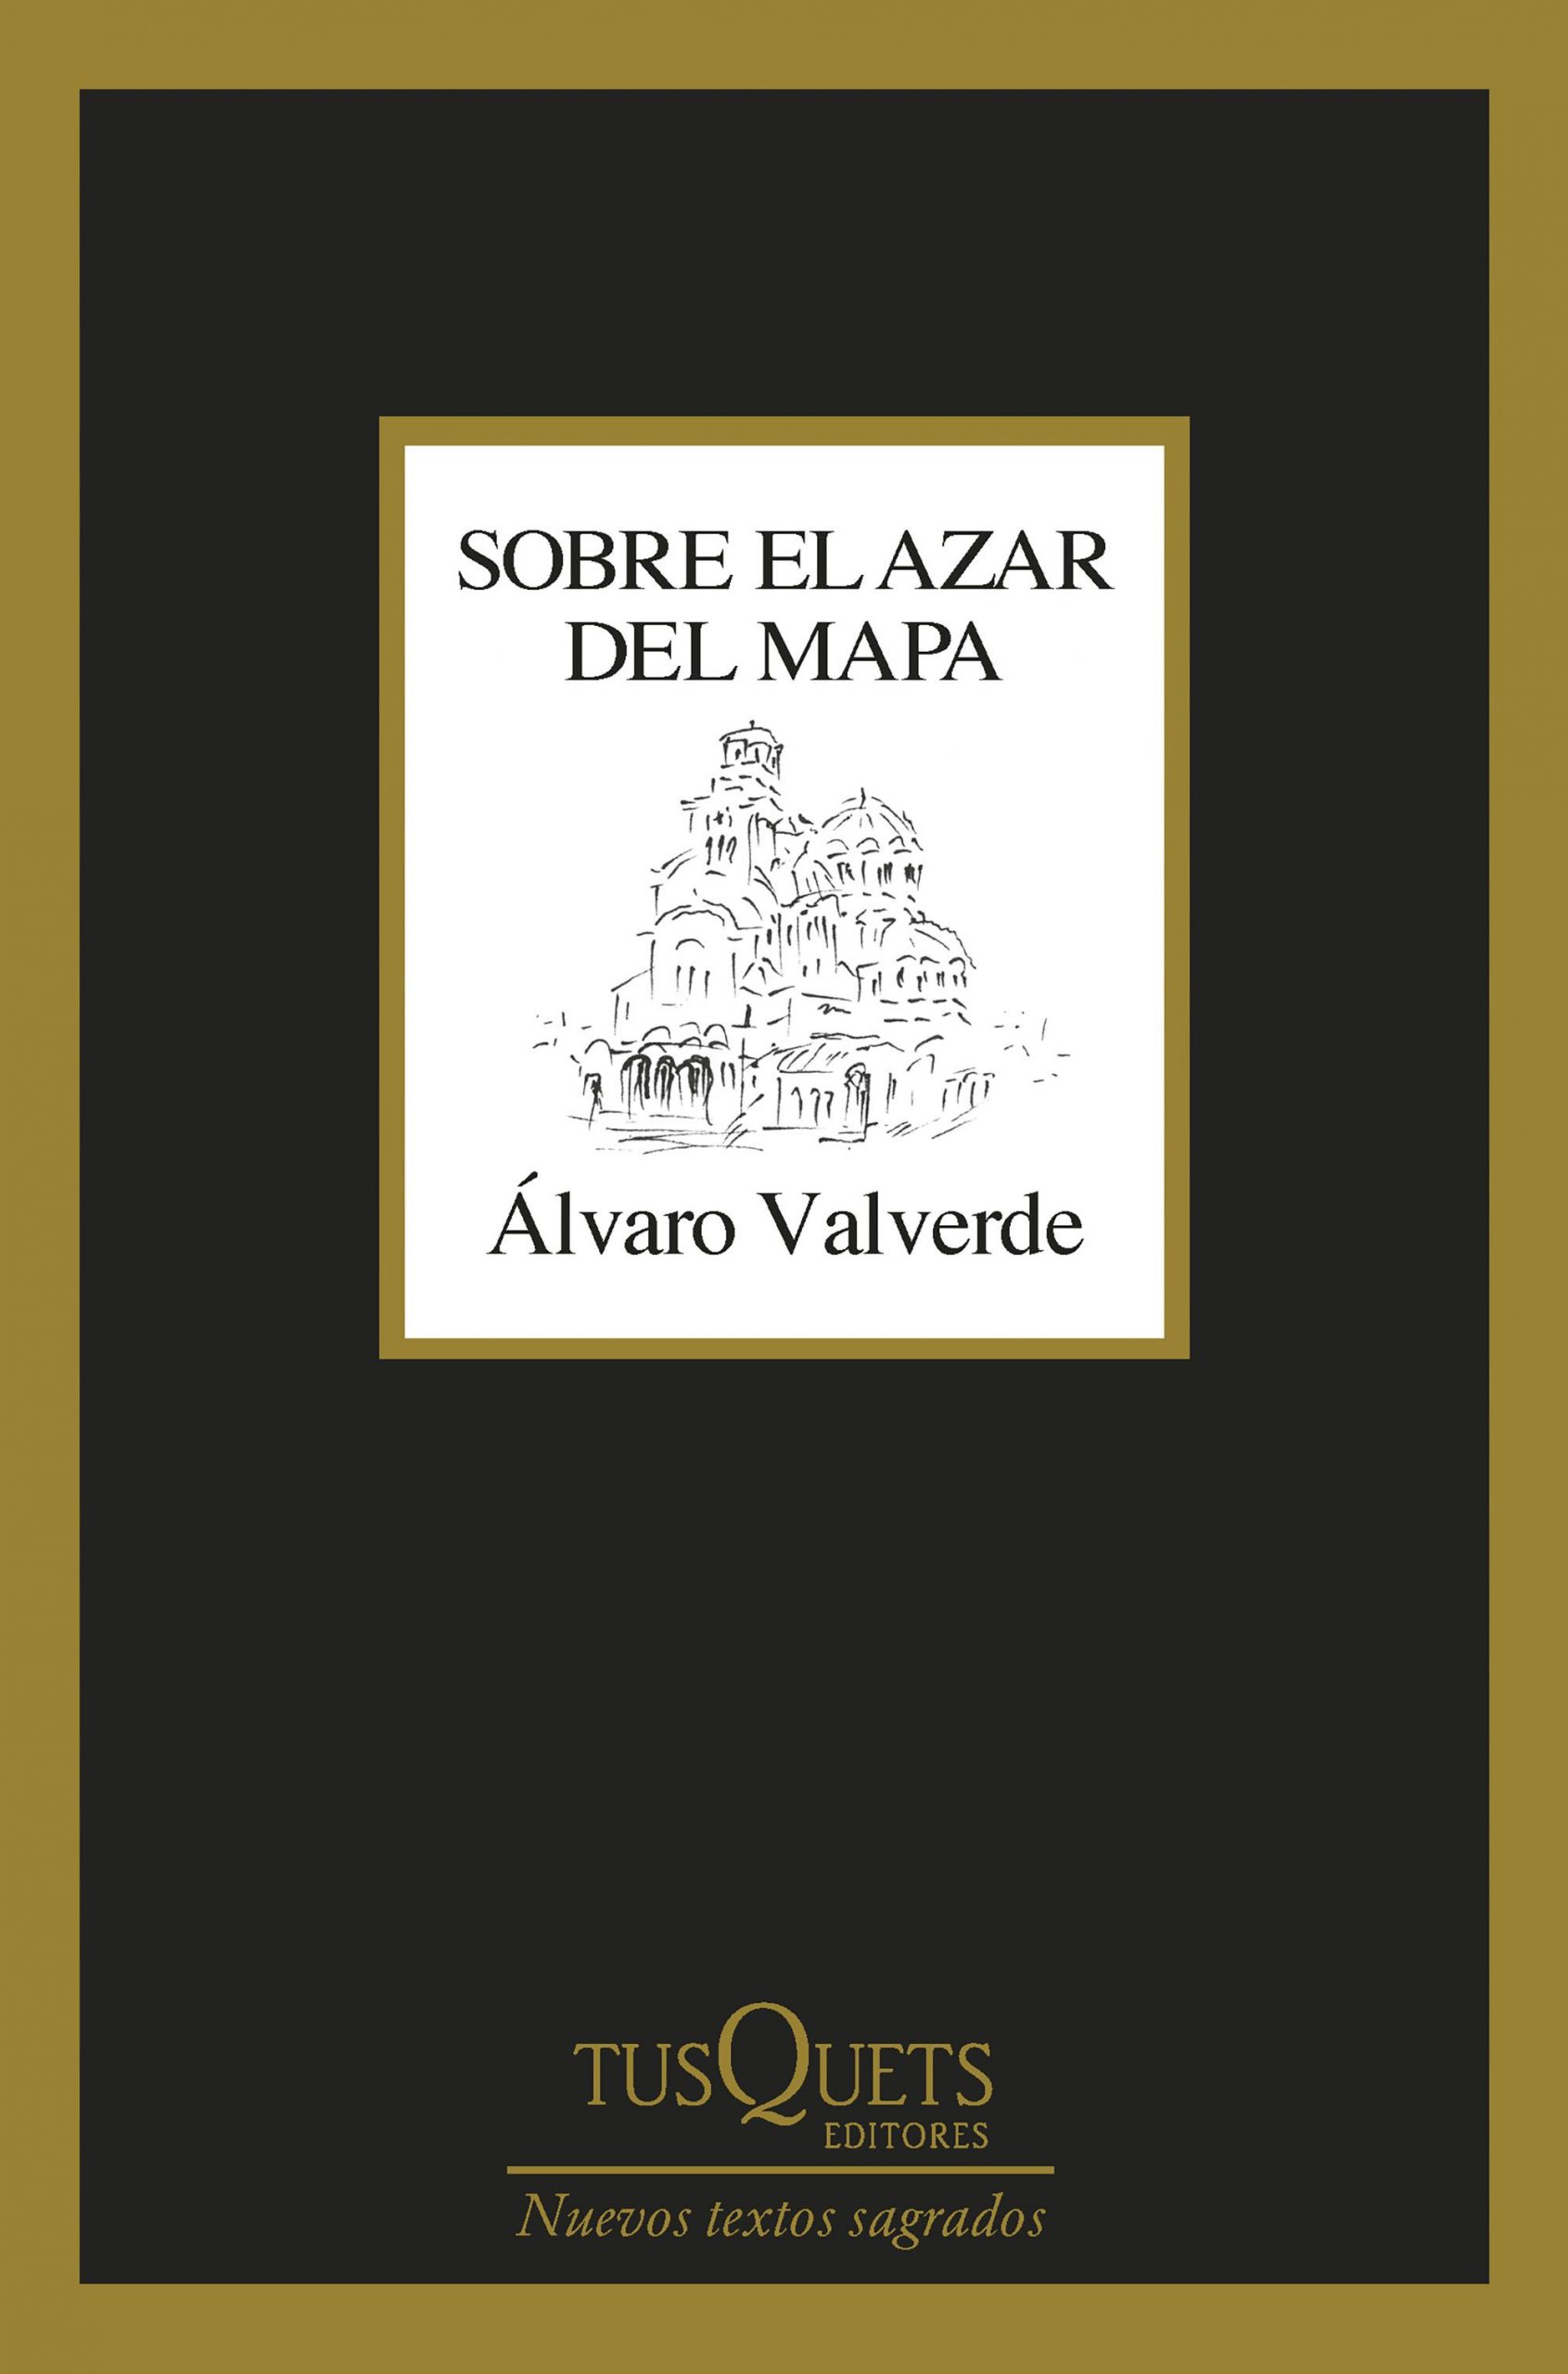 5 poemas de ‘Sobre el azar del mapa’, de Álvaro Valverde